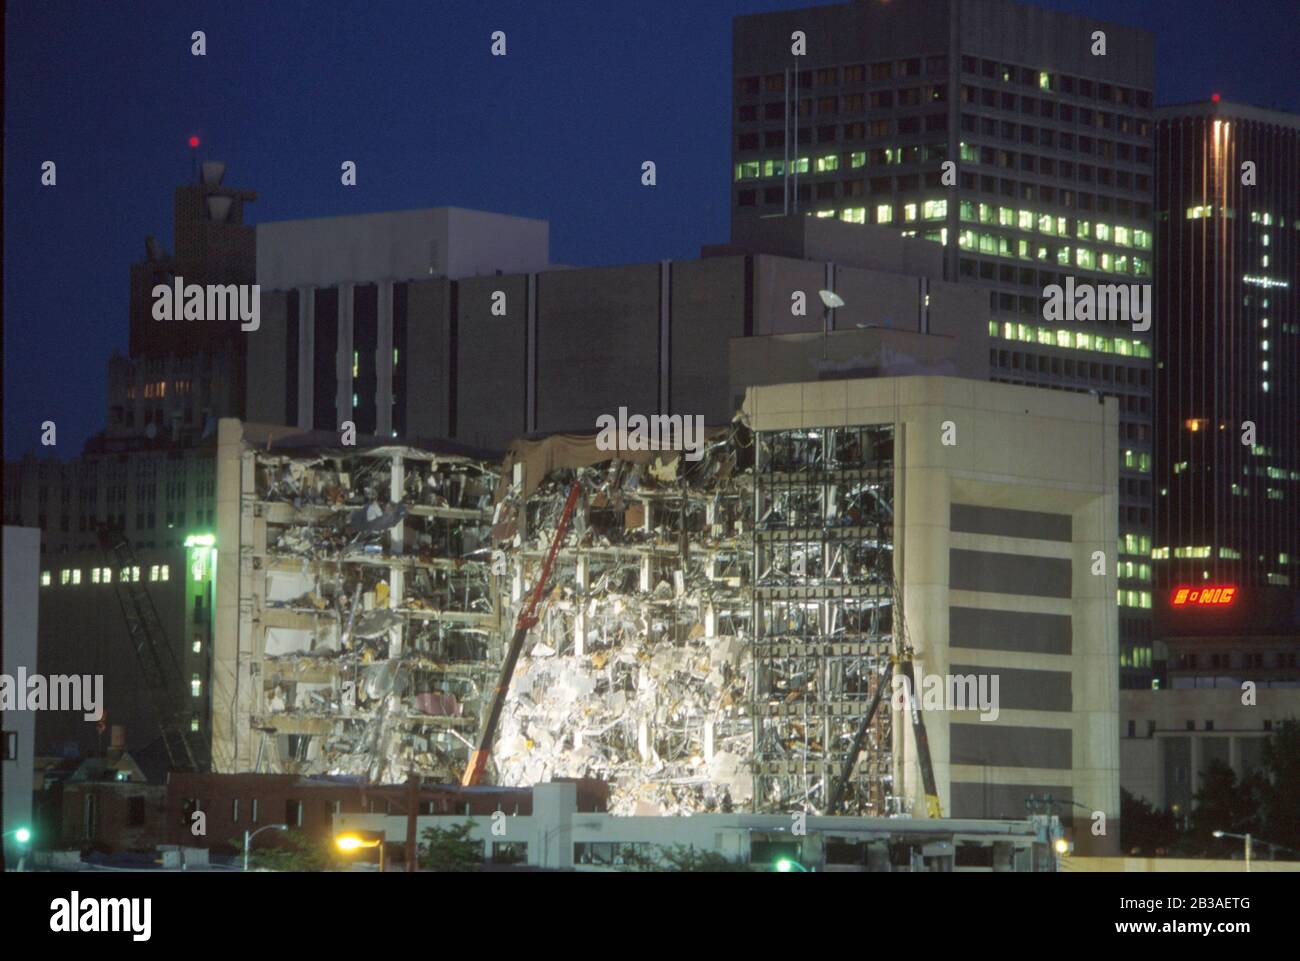 Oklahoma City Oklahoma Stati Uniti d'America, 19 aprile 1995: Esterno del Murrah Federal Building poche ore dopo che è stato bombardato in un atto di terrorismo interno. 168 persone, per lo più dipendenti che lavorano nell'edificio, sono state uccise. ©Bob Daemmrich Foto Stock